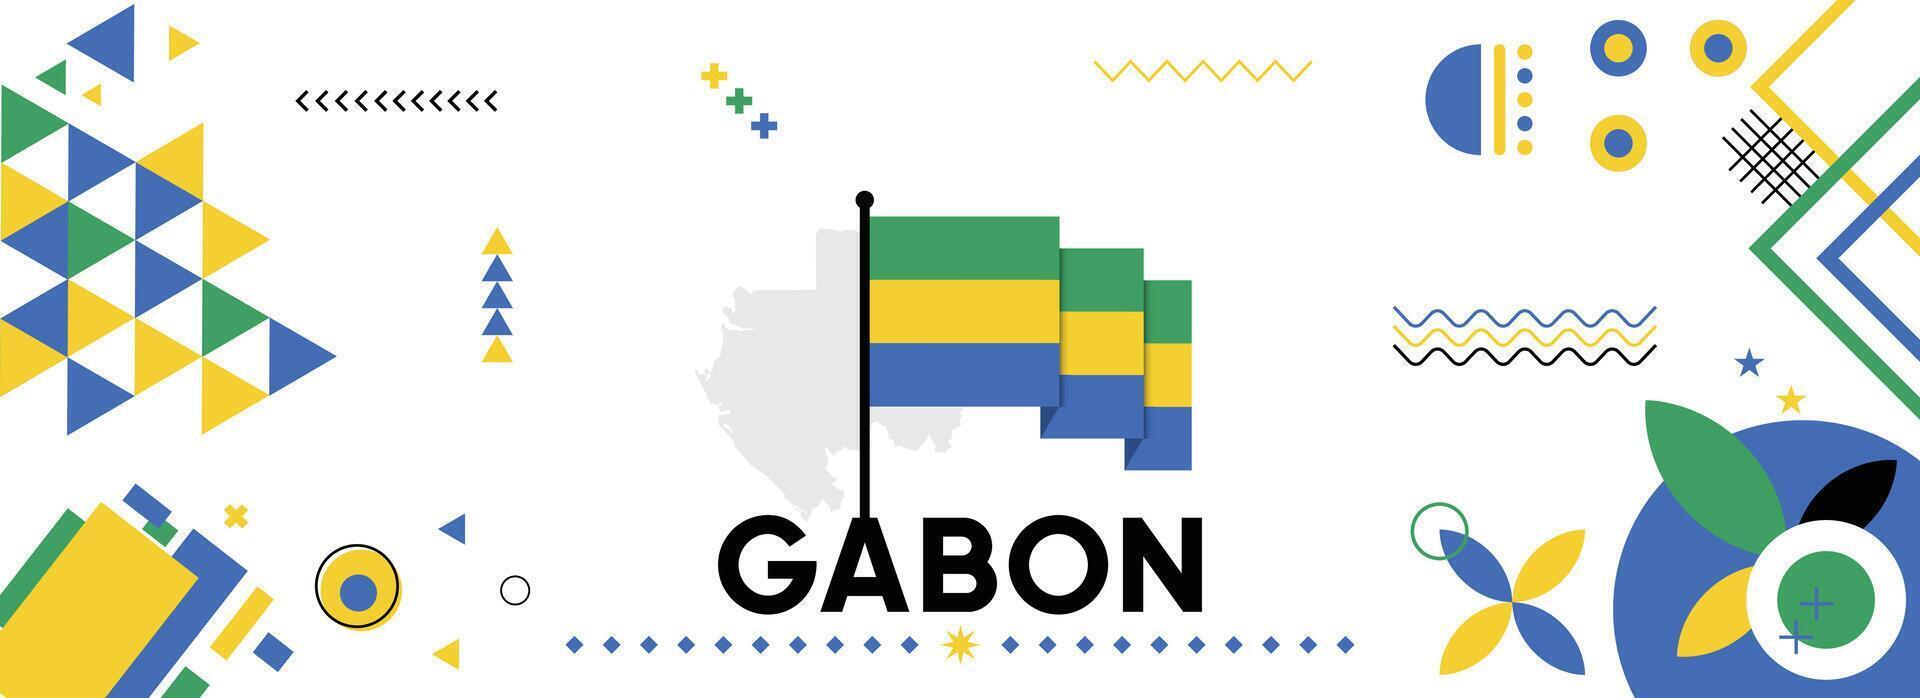 Gabón nacional o independencia día bandera para país celebracion. bandera y mapa de Gabón con elevado puños moderno retro diseño con tiporgafia resumen geométrico iconos vector ilustración